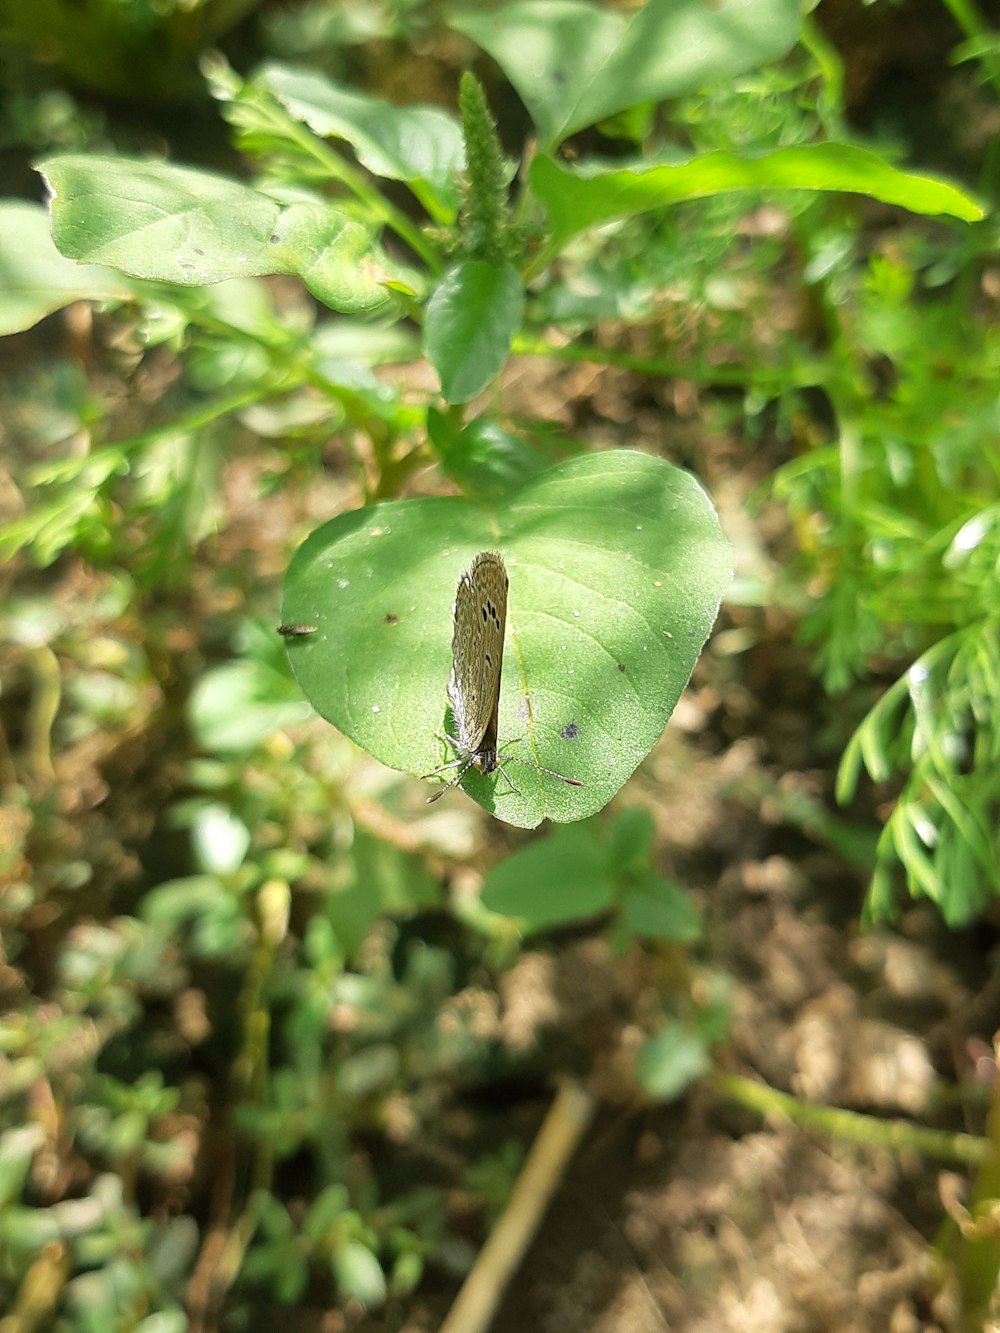 a bug crawling on a leaf in a garden